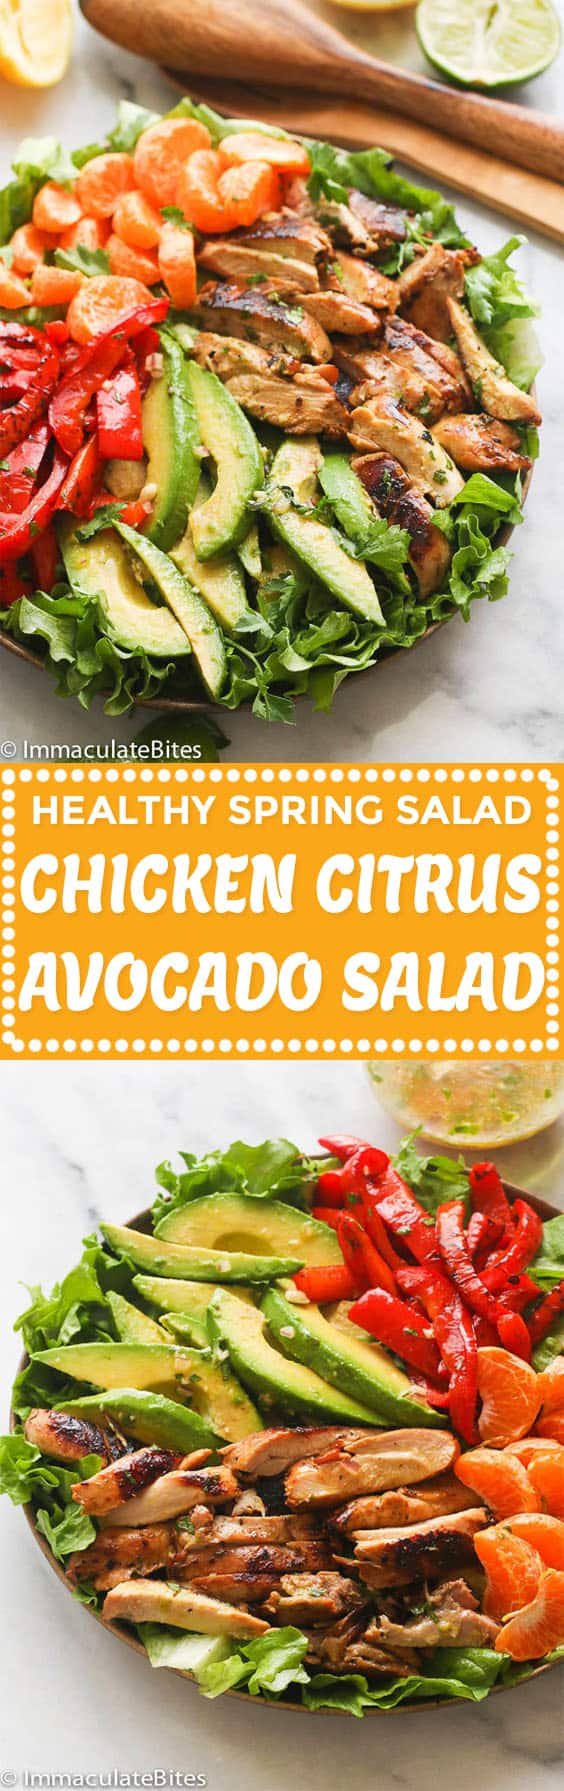 Chicken Citrus Avocado Salad